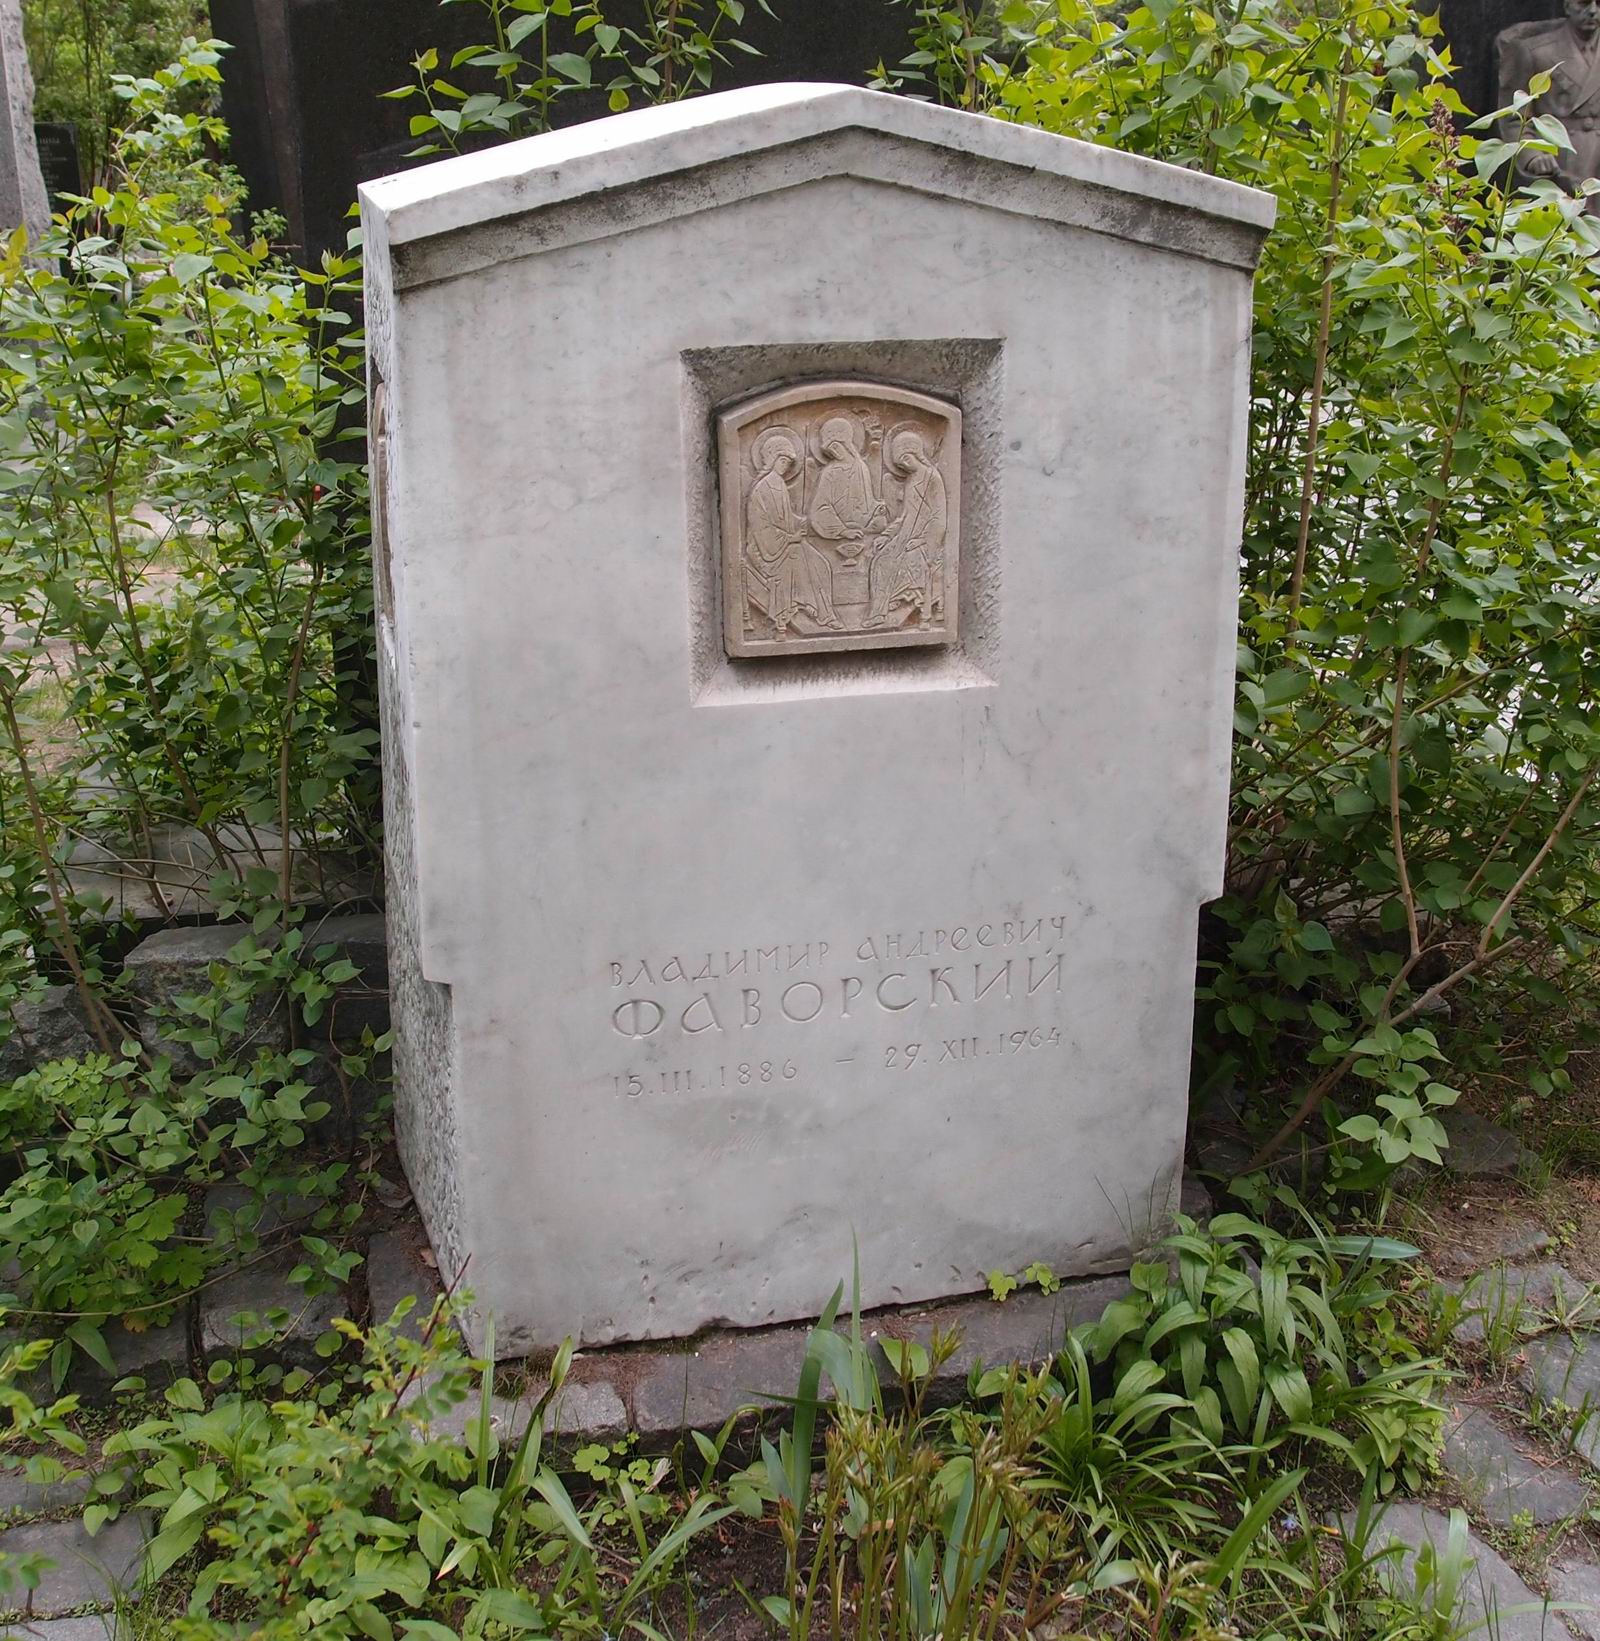 Памятник на могиле Фаворского В.А. (1886–1964), ск. Д.Шаховской, на Новодевичьем кладбище (6–14–12). Нажмите левую кнопку мыши, чтобы увидеть фрагменты памятника.